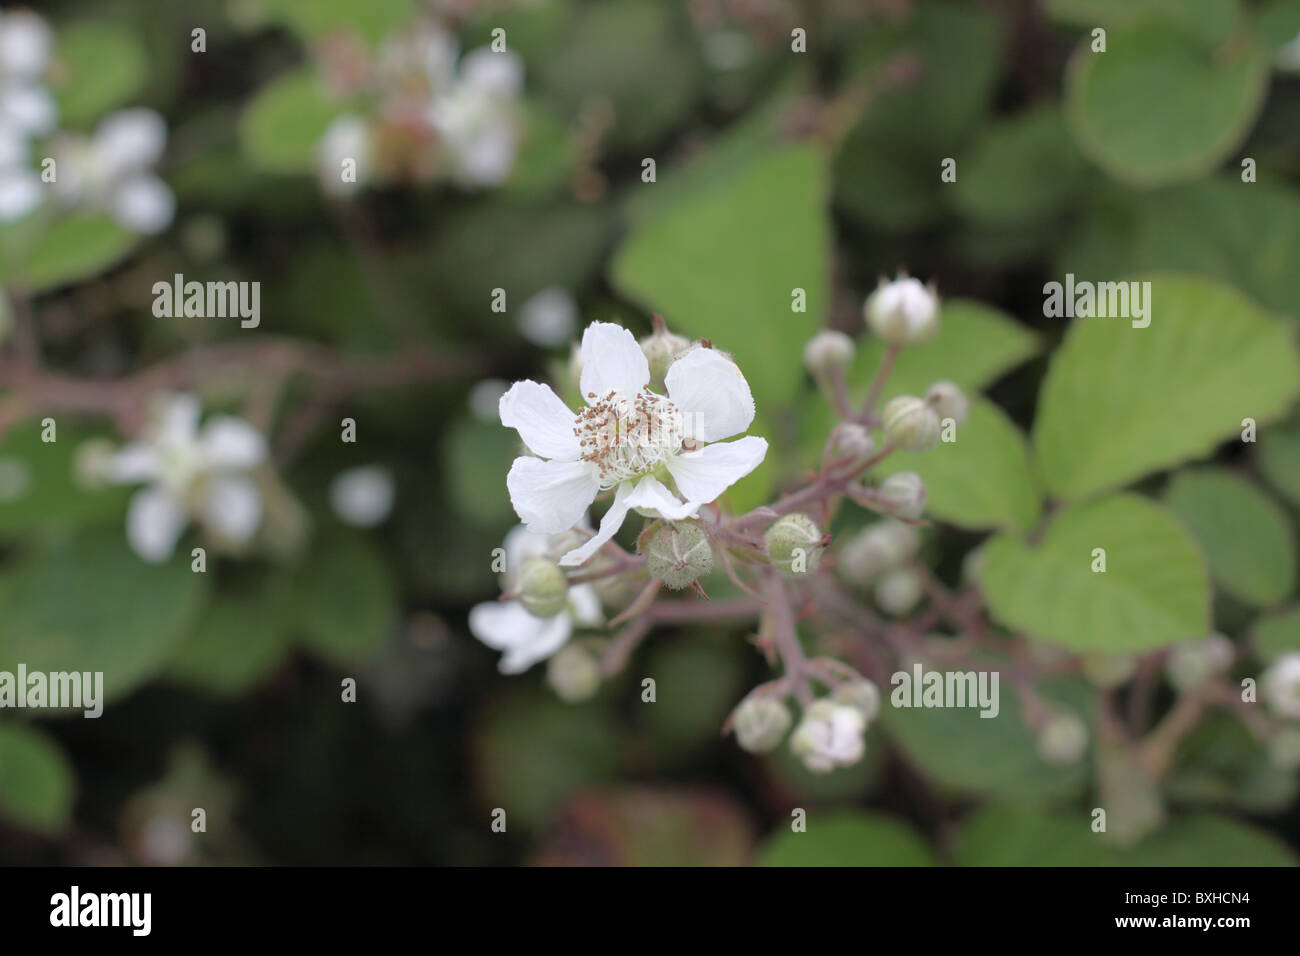 Blackberry flower Stock Photo